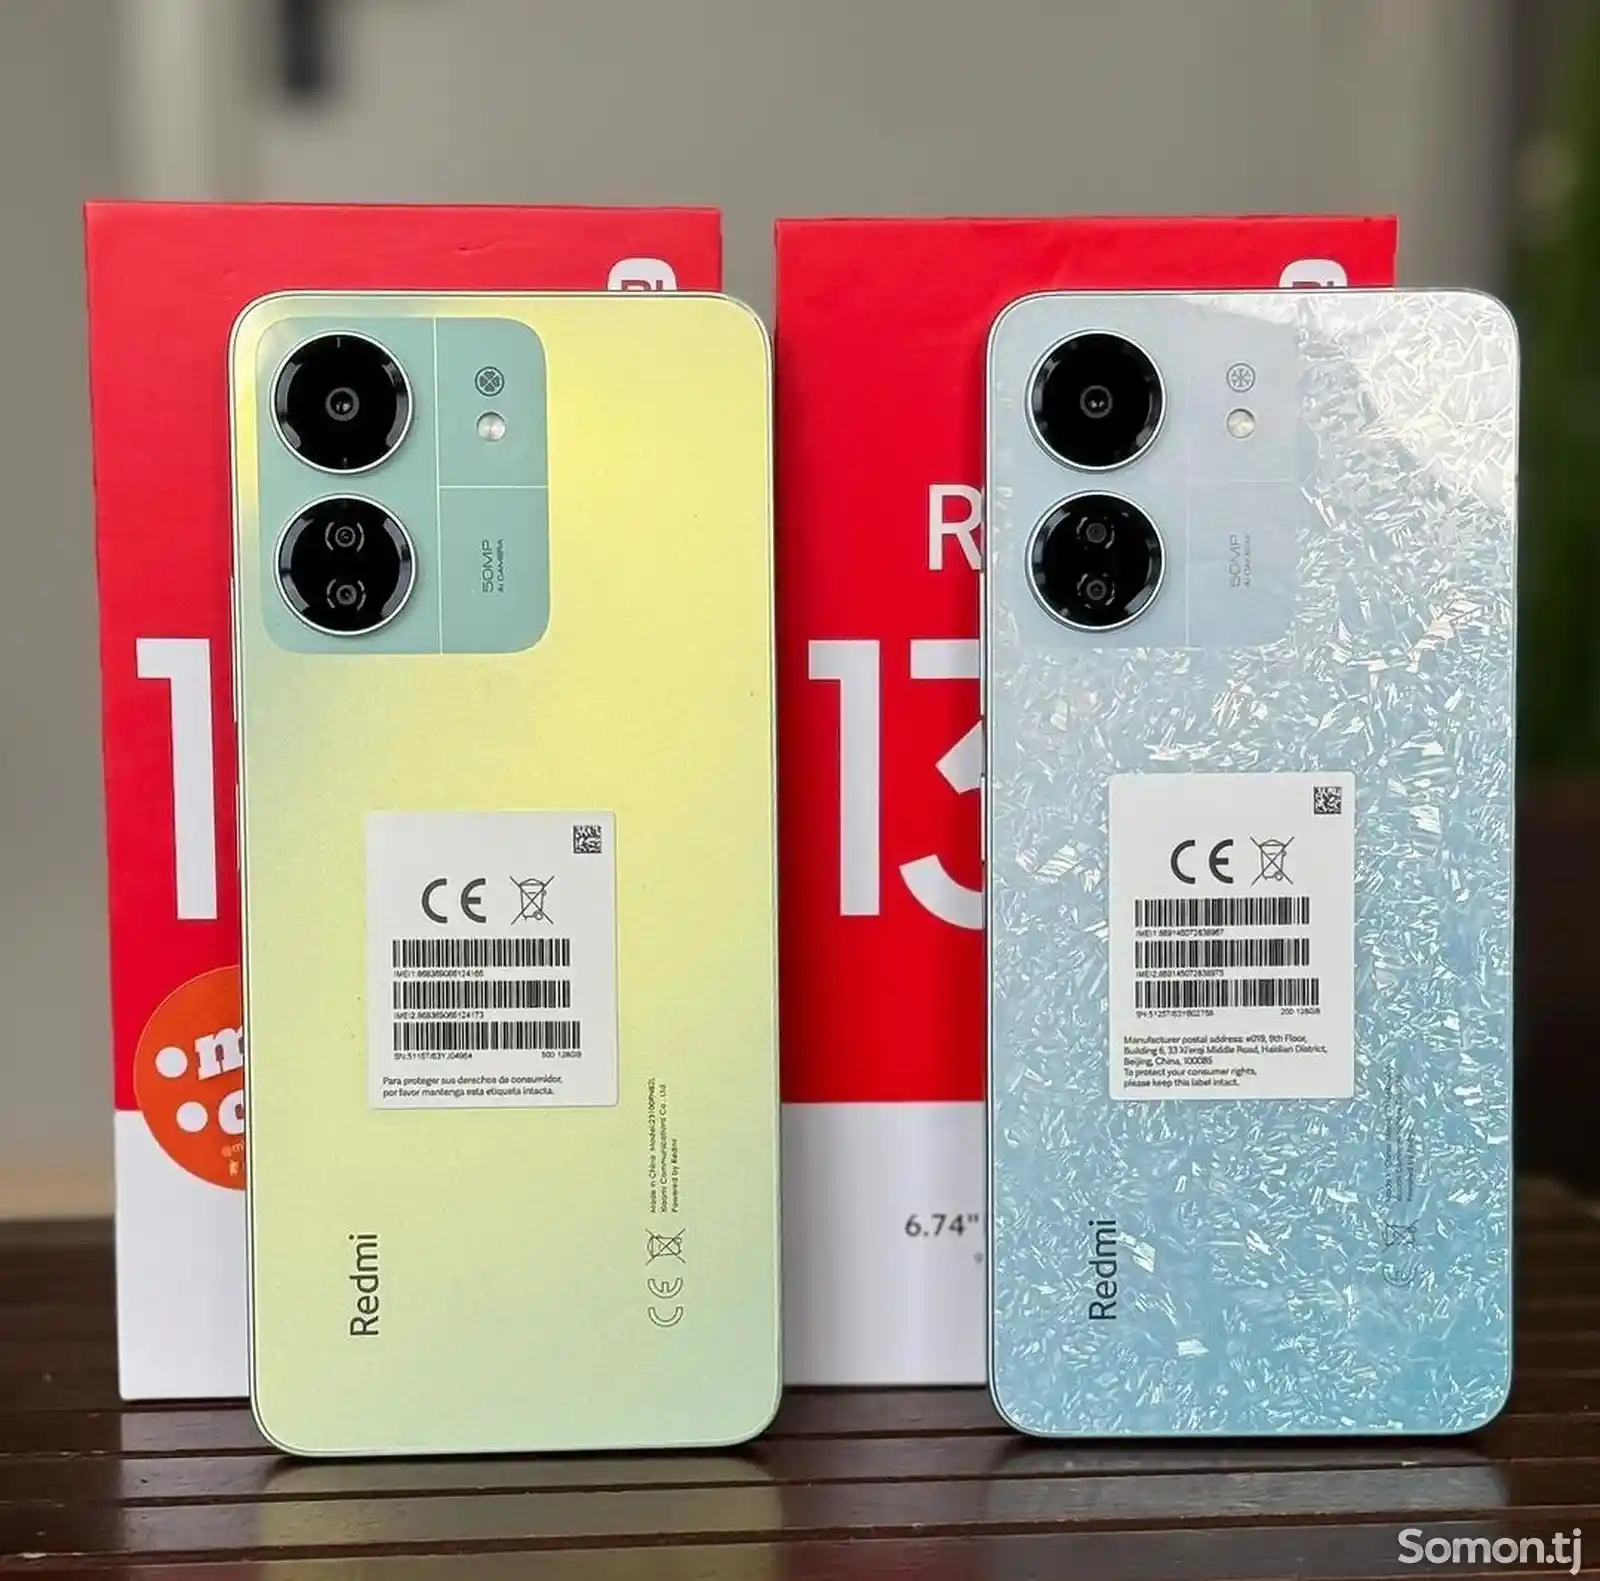 Xiaomi Redmi 13C 128Gb-1